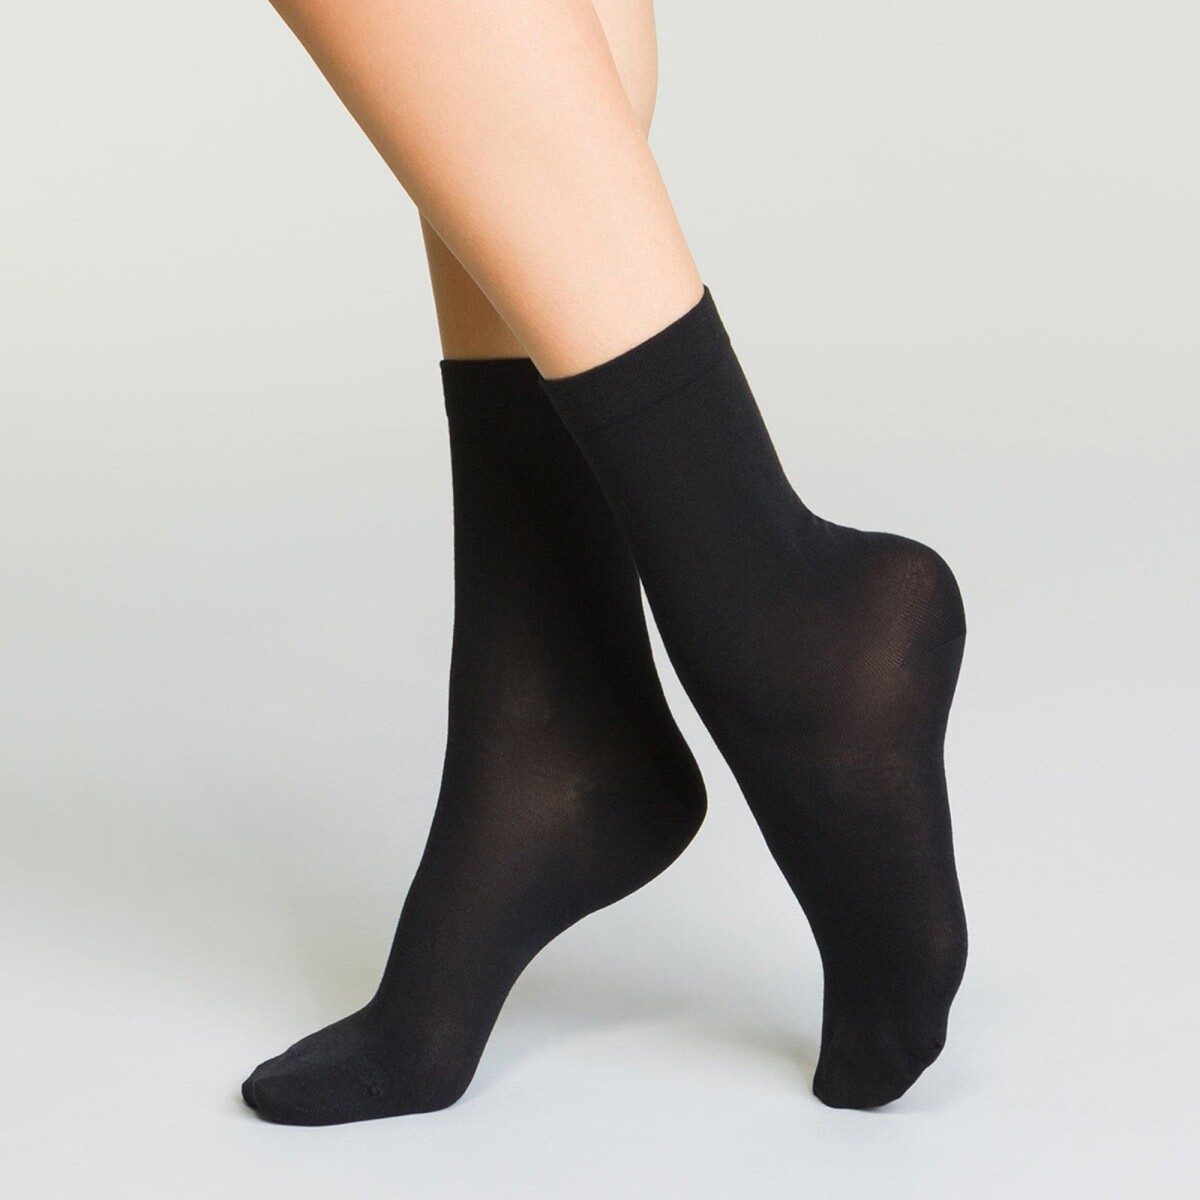 Polovysoké termo dámské ponožky